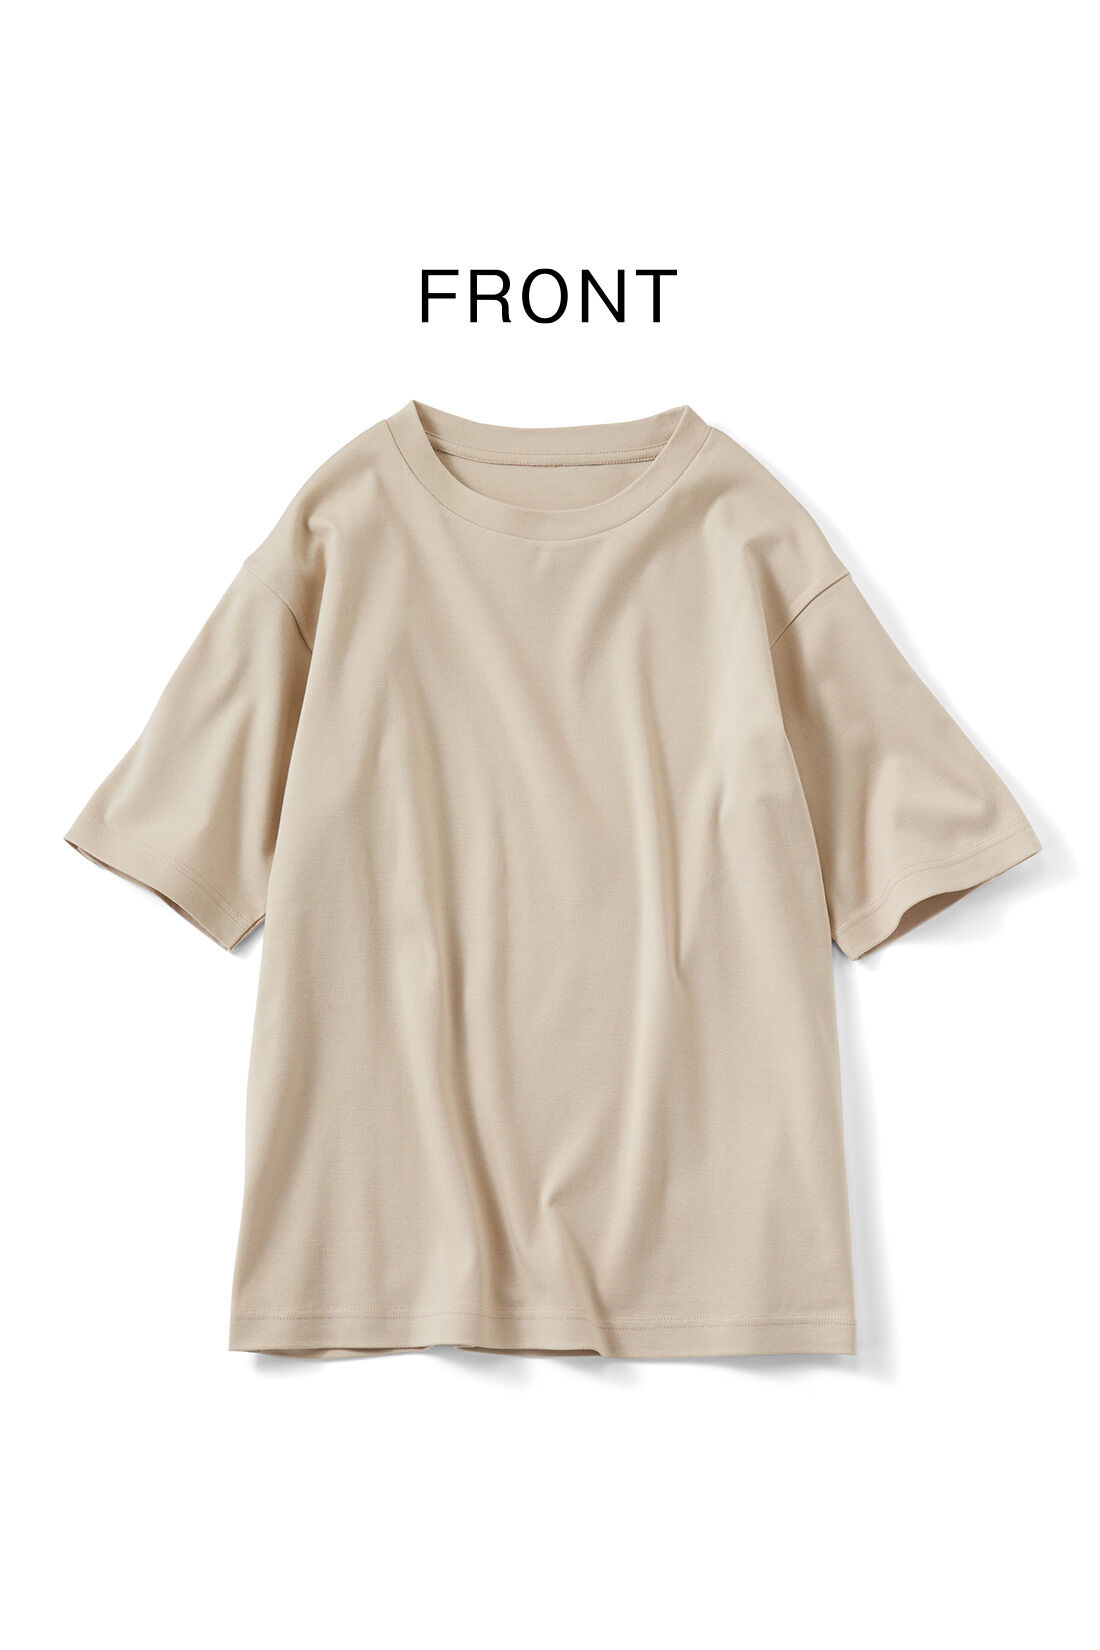 Real Stock|リブ イン コンフォート×plantica コットン100％がうれしい 花咲くフォトTシャツ〈チャコール〉|背中にプリントがあるチャコールの前面はシンプルなデザイン。　※お届けするカラーとは異なります。